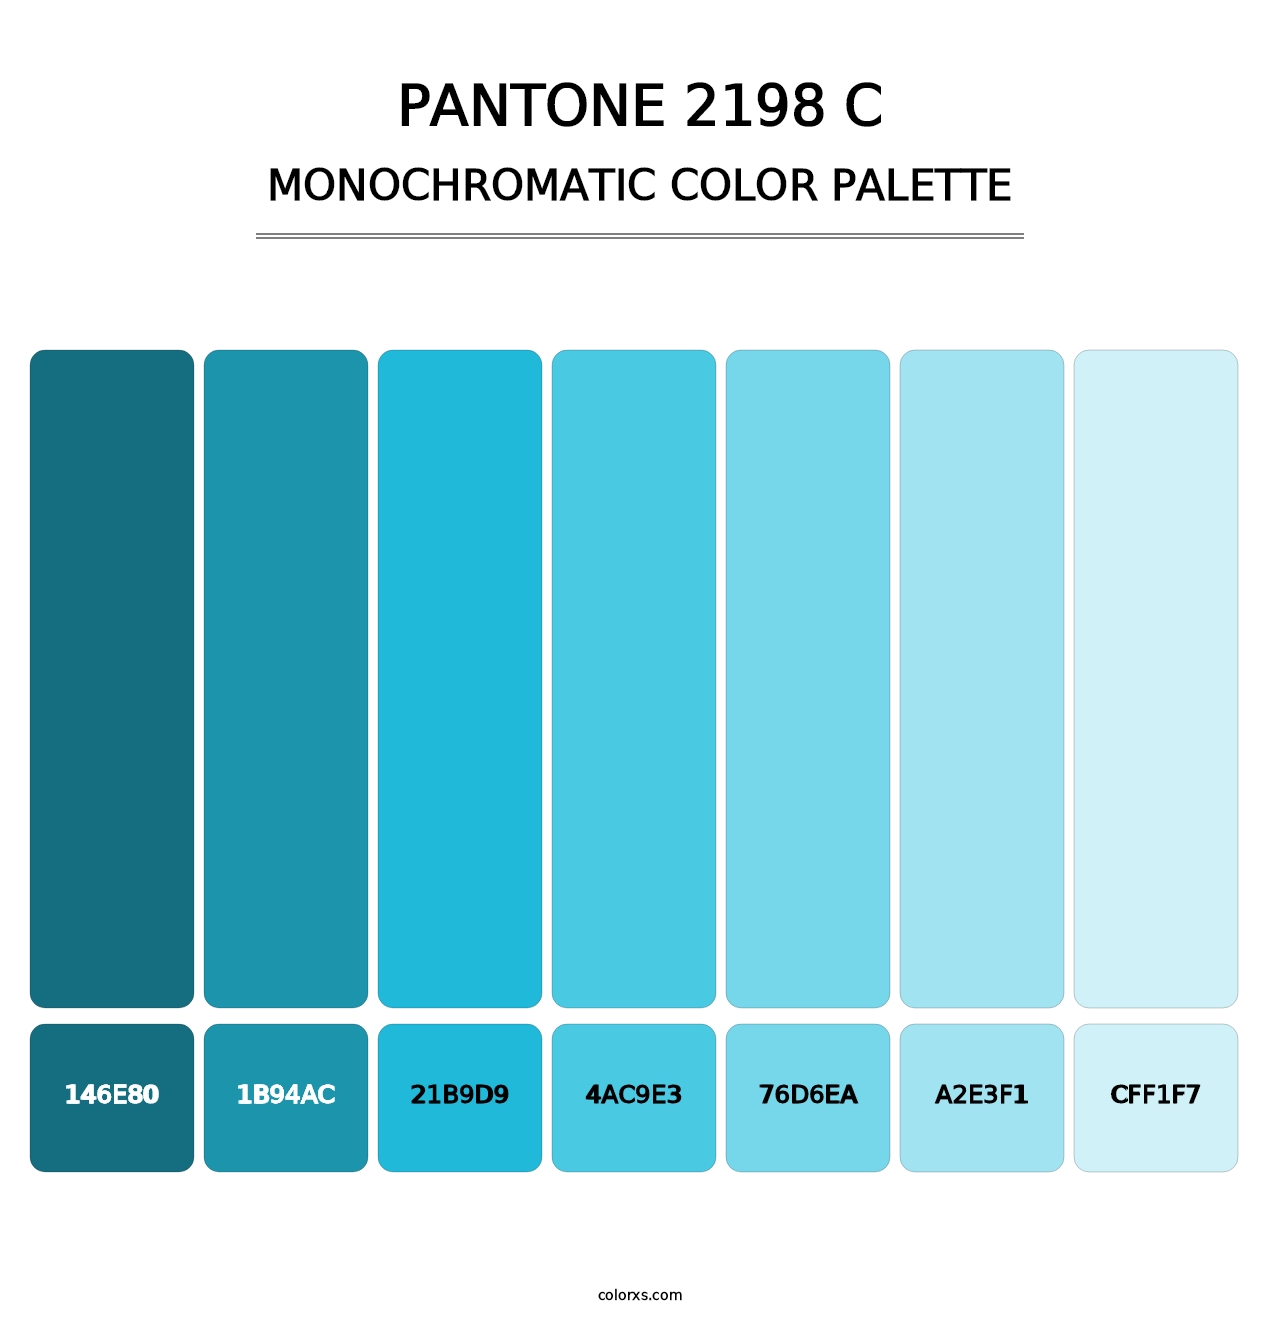 PANTONE 2198 C - Monochromatic Color Palette